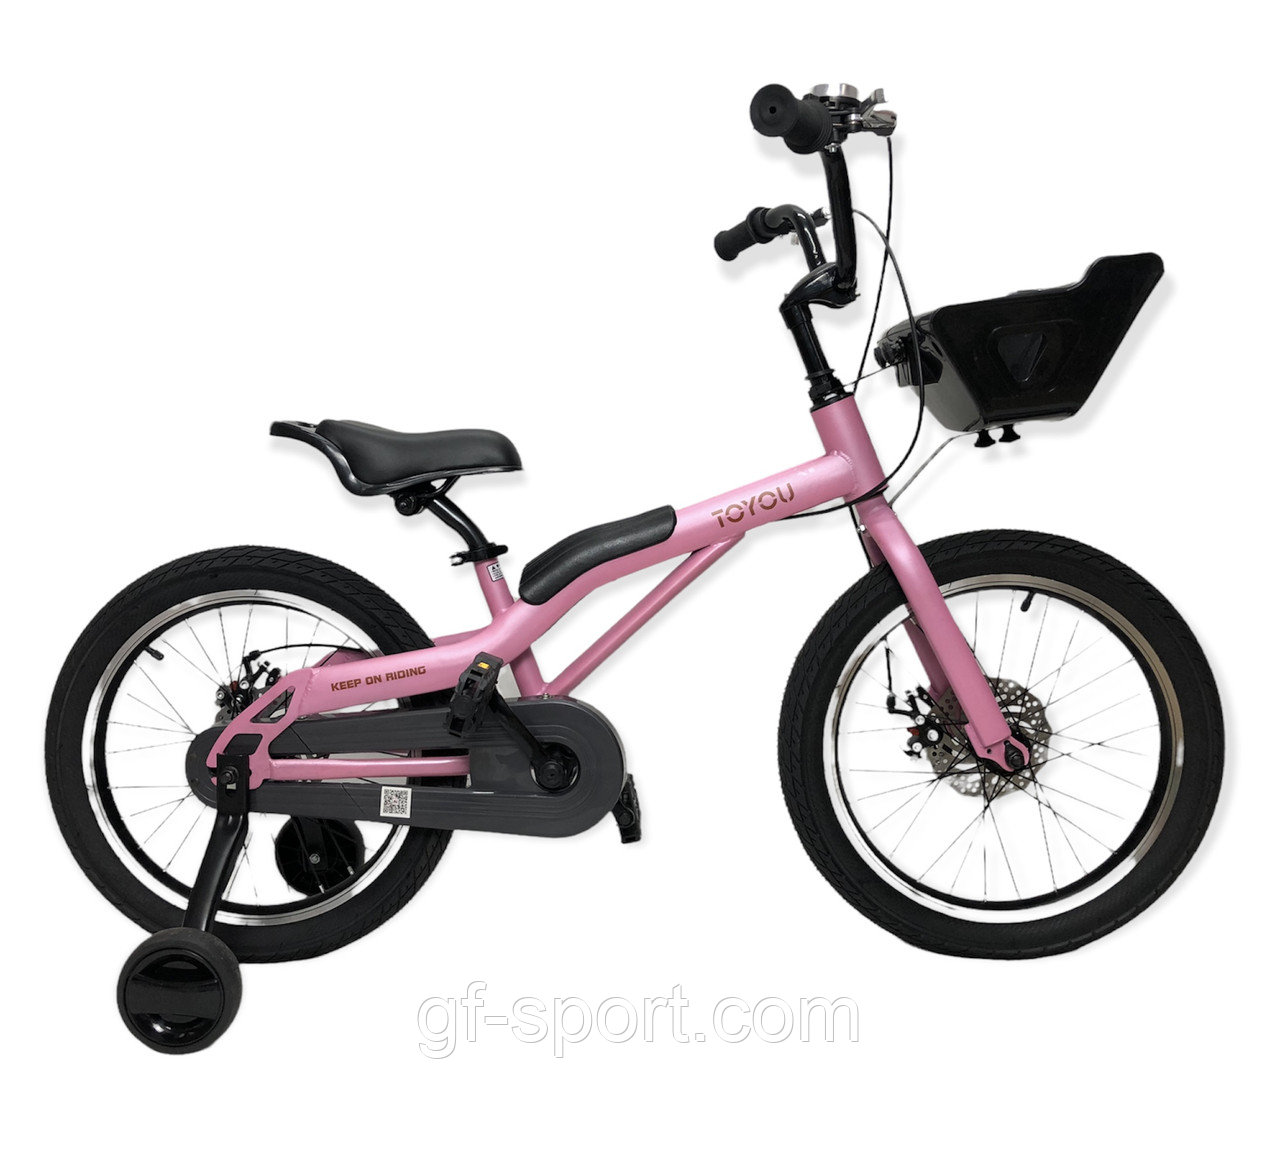 Велосипед ToYou розовый оригинал детский с холостым ходом, на дисковых тормозах 18 размер (532-18)